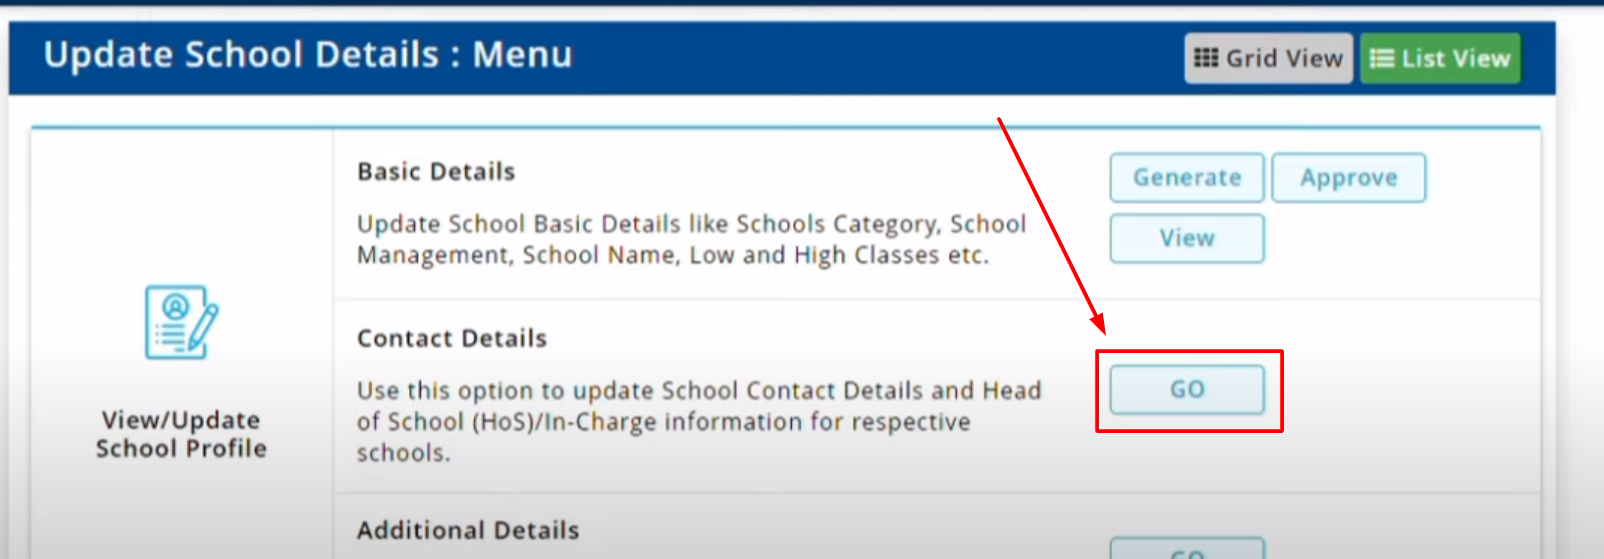 update school details udise portal